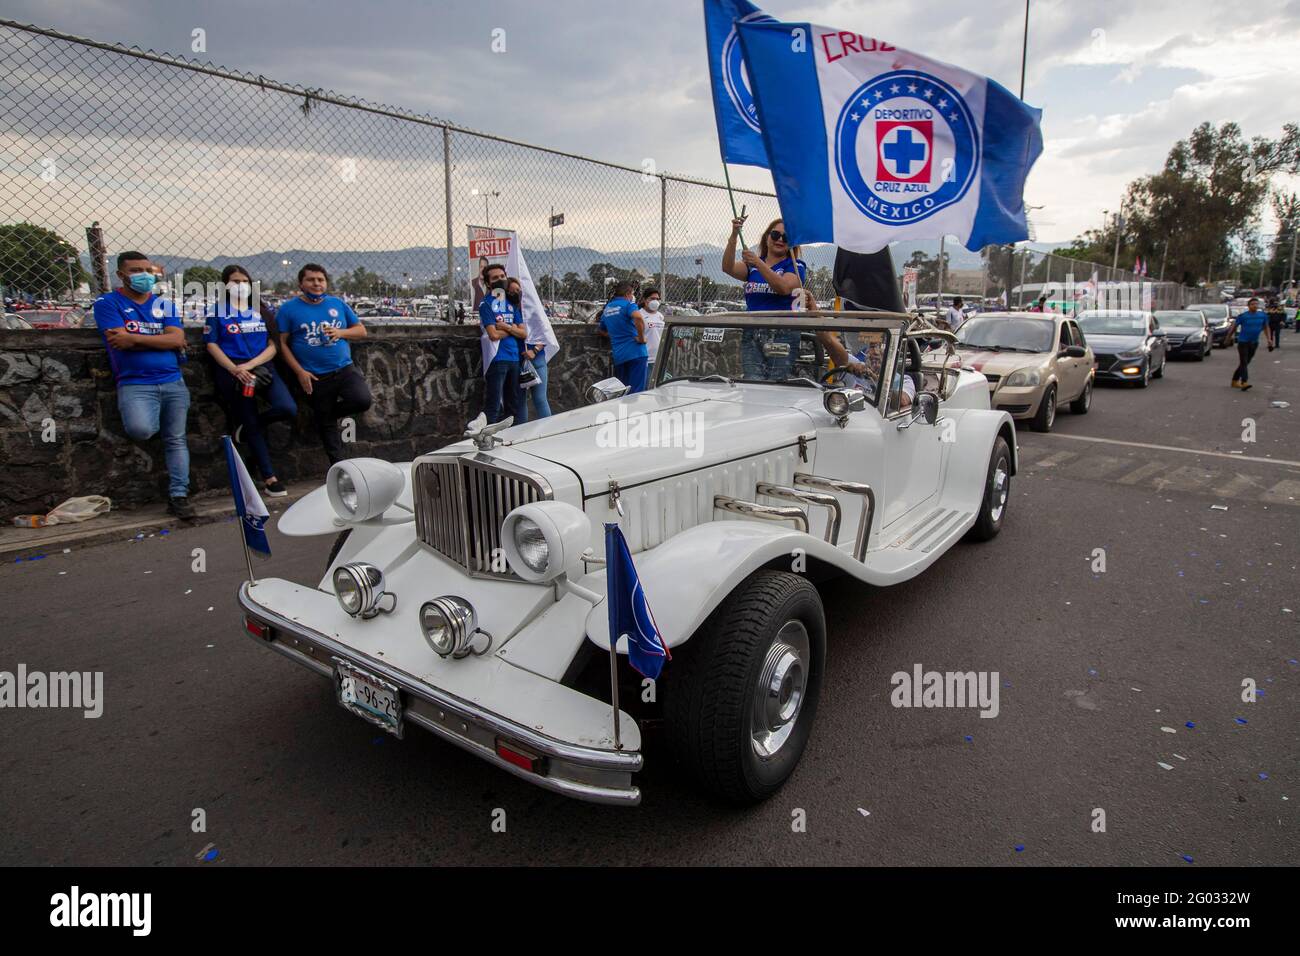 CITTÀ DEL MESSICO, MESSICO - MAGGIO 30: I tifosi di Cruz Azul si incontrano  fuori dallo stadio Azteca per sostenere la loro squadra, durante la finale  del Torneo di chiusura della Lega